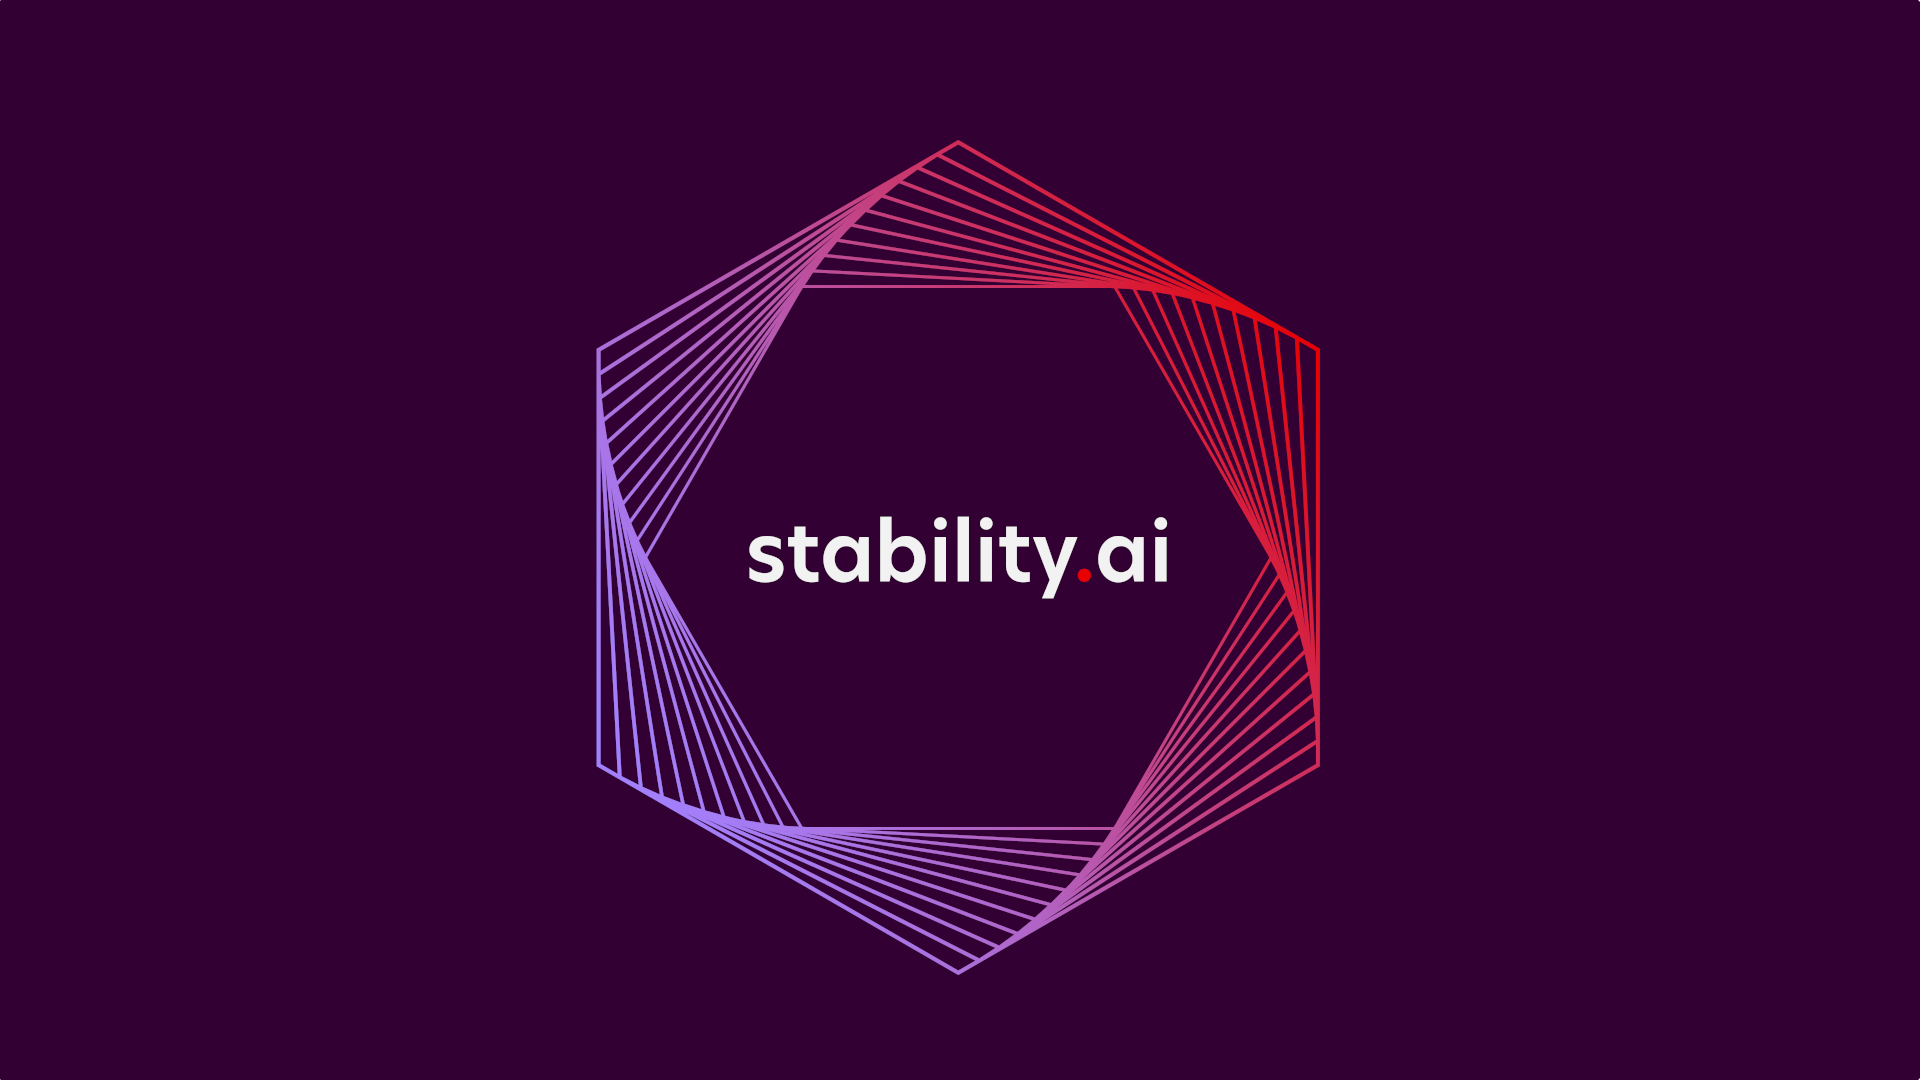 تعلن شركة Stability AI عن نموذج جديد للذكاء الاصطناعي يولّد الصور